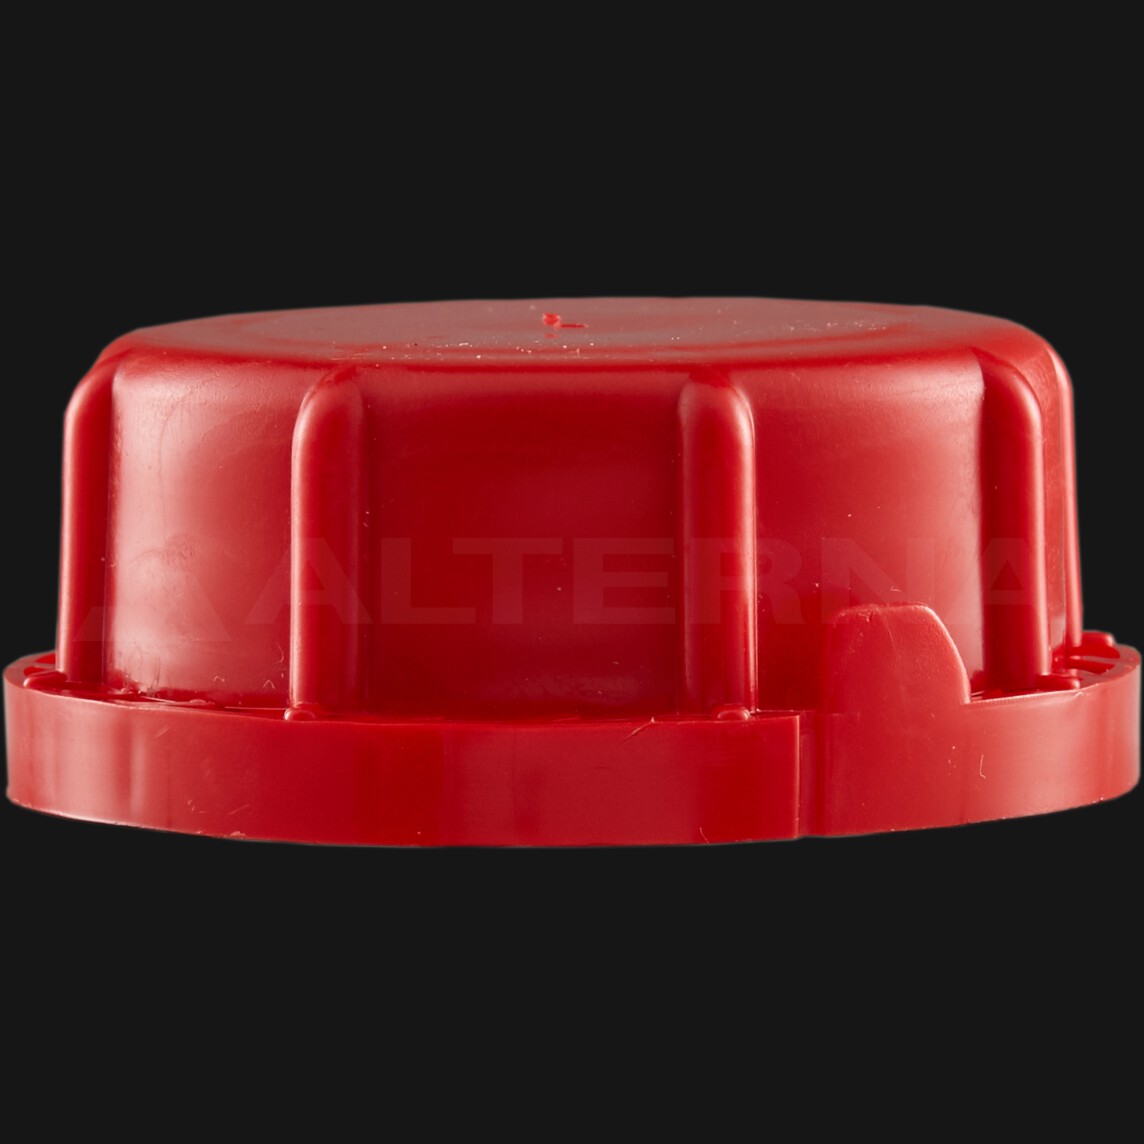 60 mm Self Sealing Capsule Vented Secure Cap